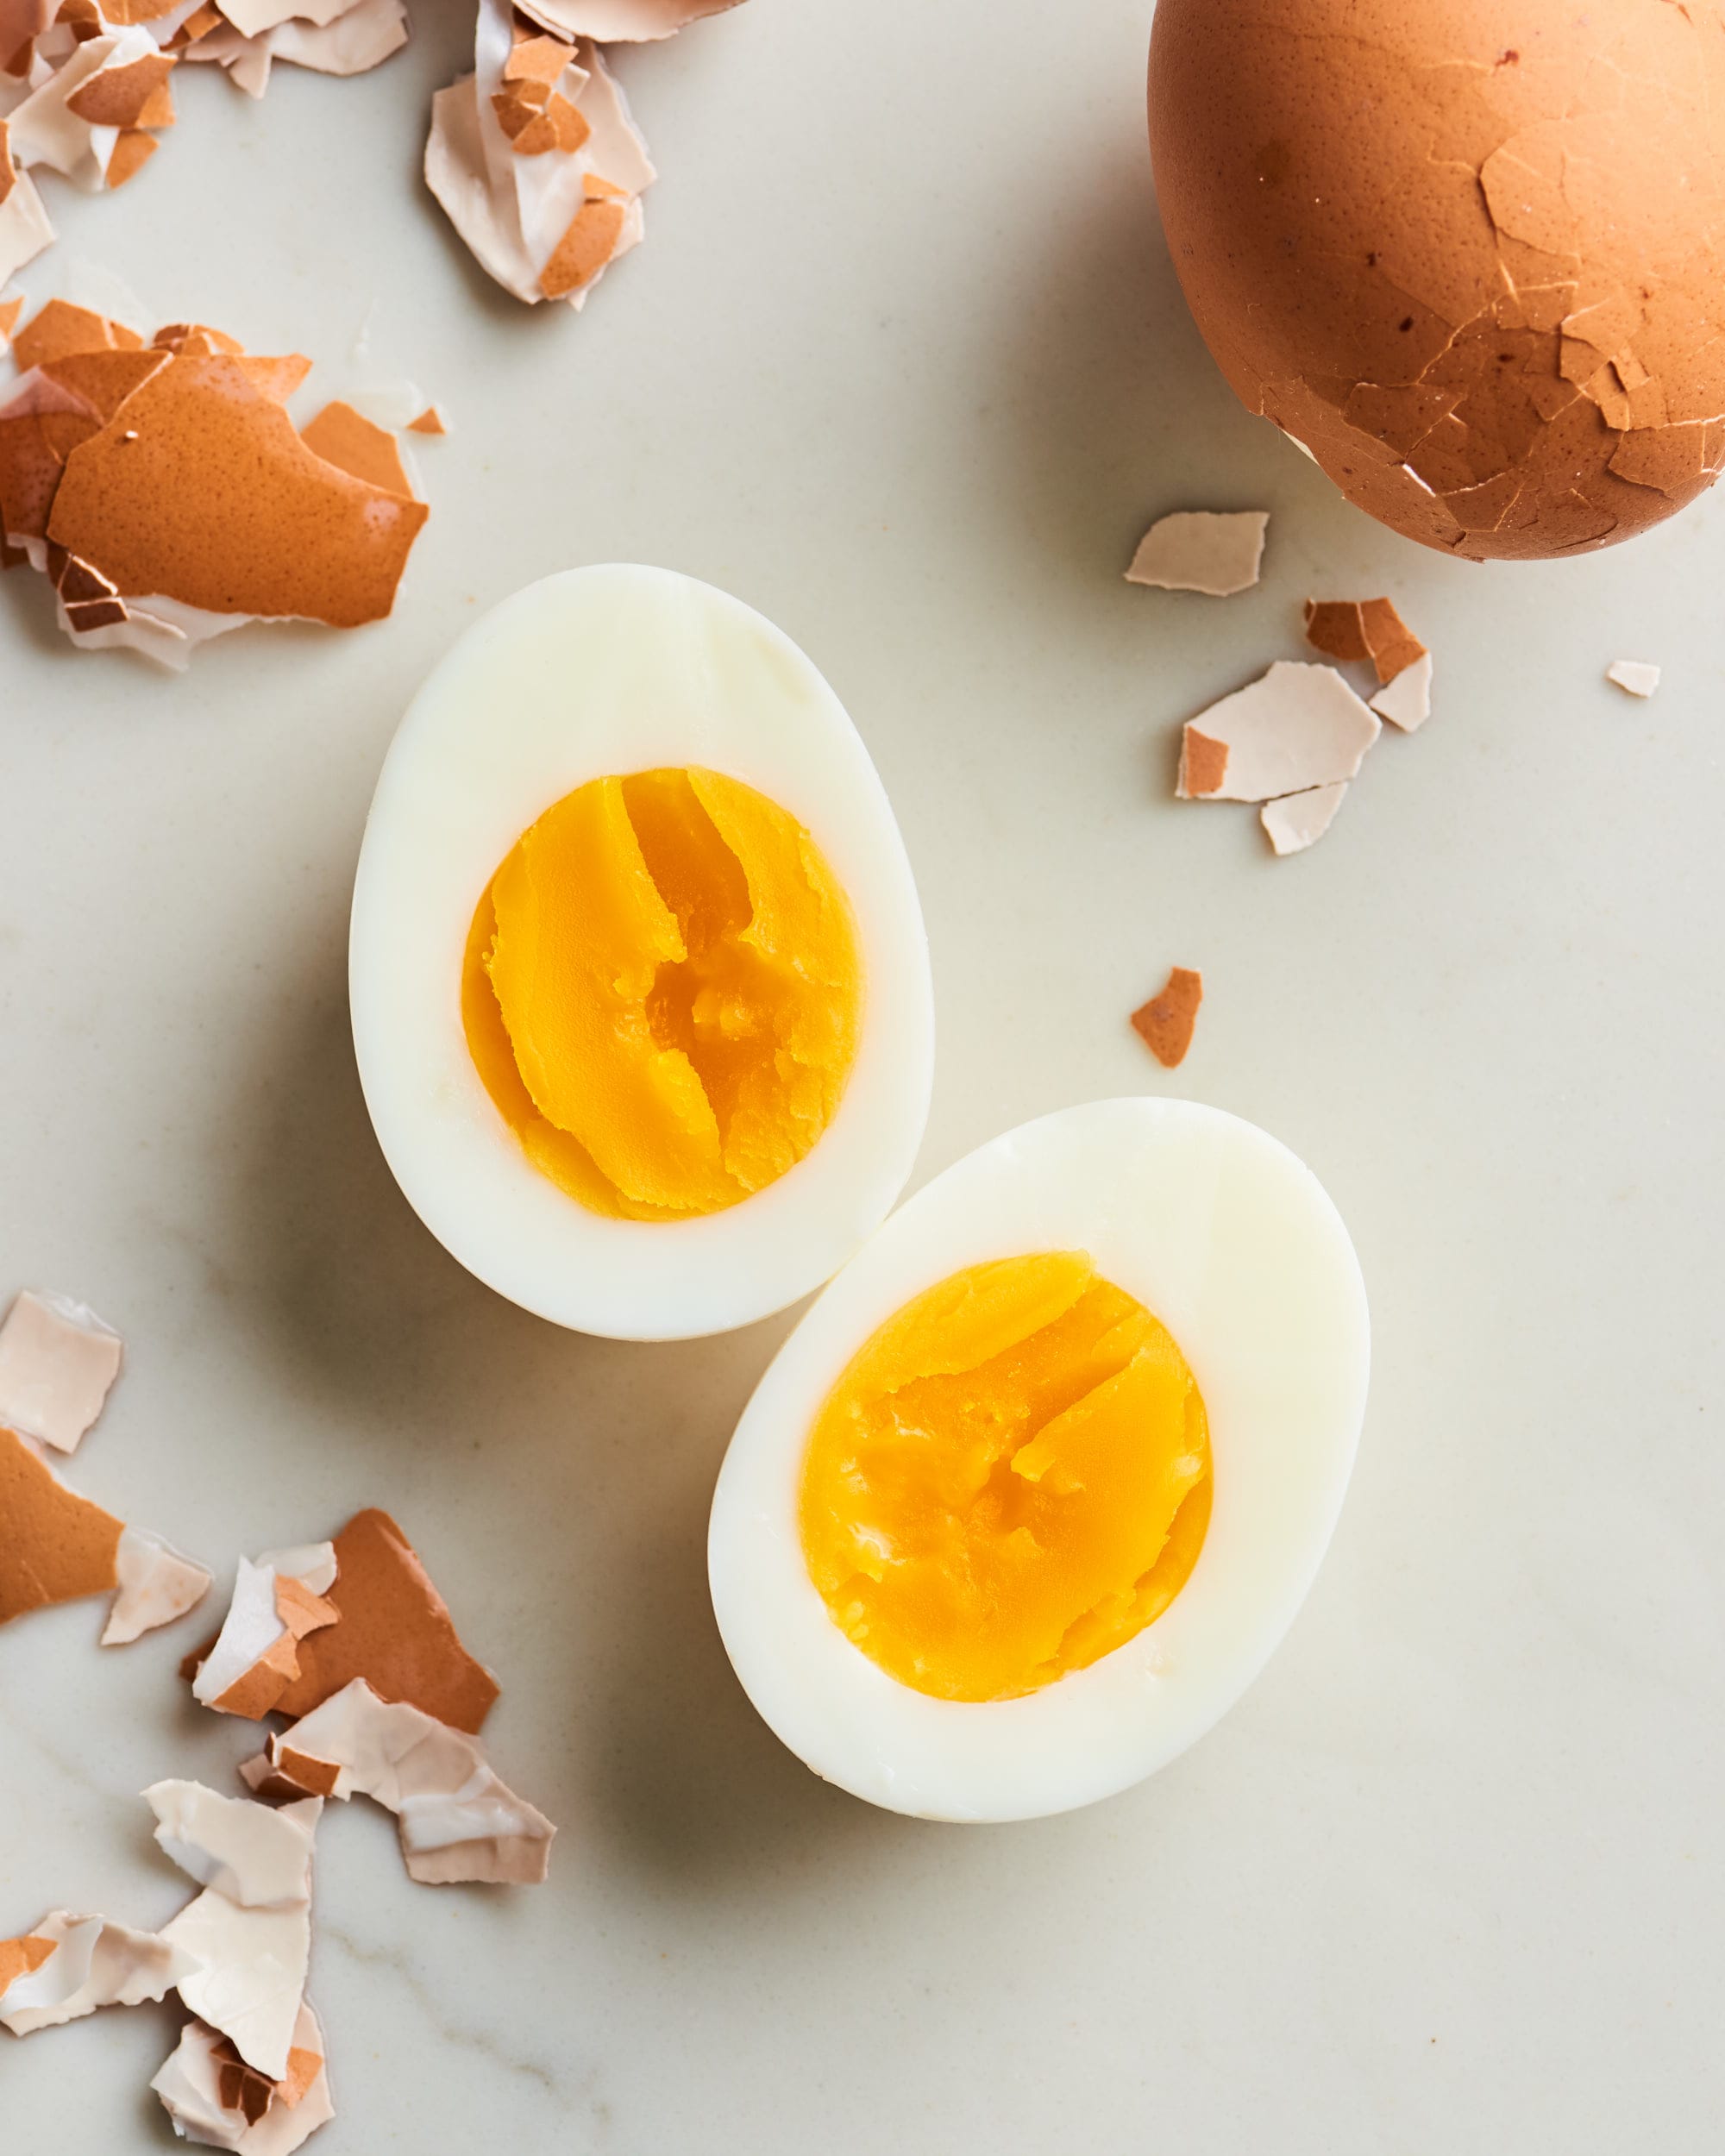 https://cdn.apartmenttherapy.info/image/upload/v1580409865/k/Photo/Recipes/2020-02-How-To-Hard-Boiled-Egg/HT-Hard-Boiled-Egg_065.jpg